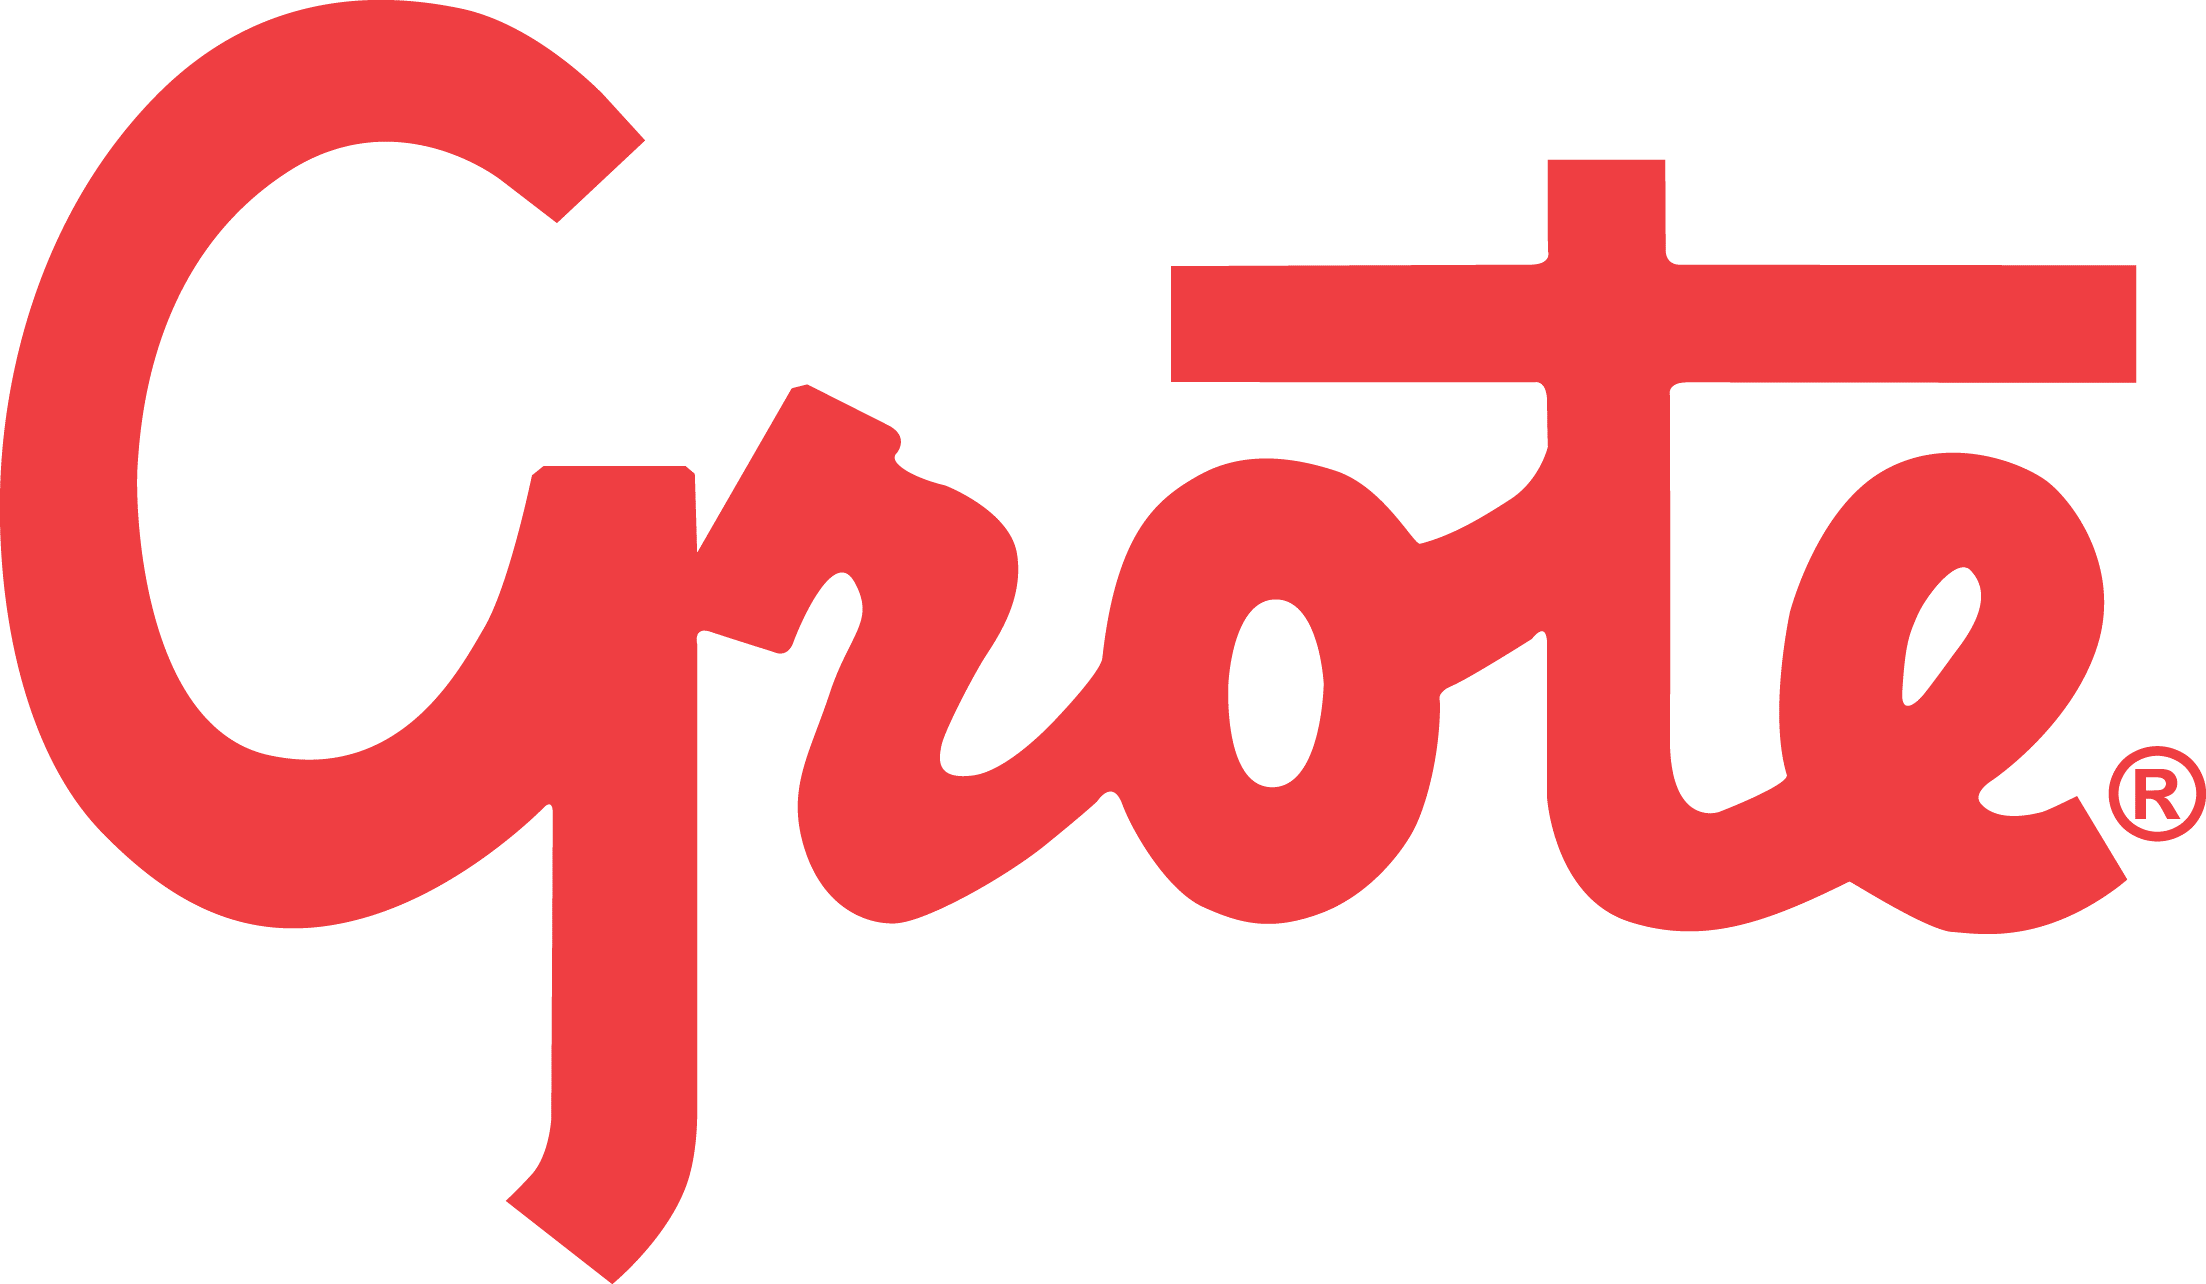 Grote Industries Logo